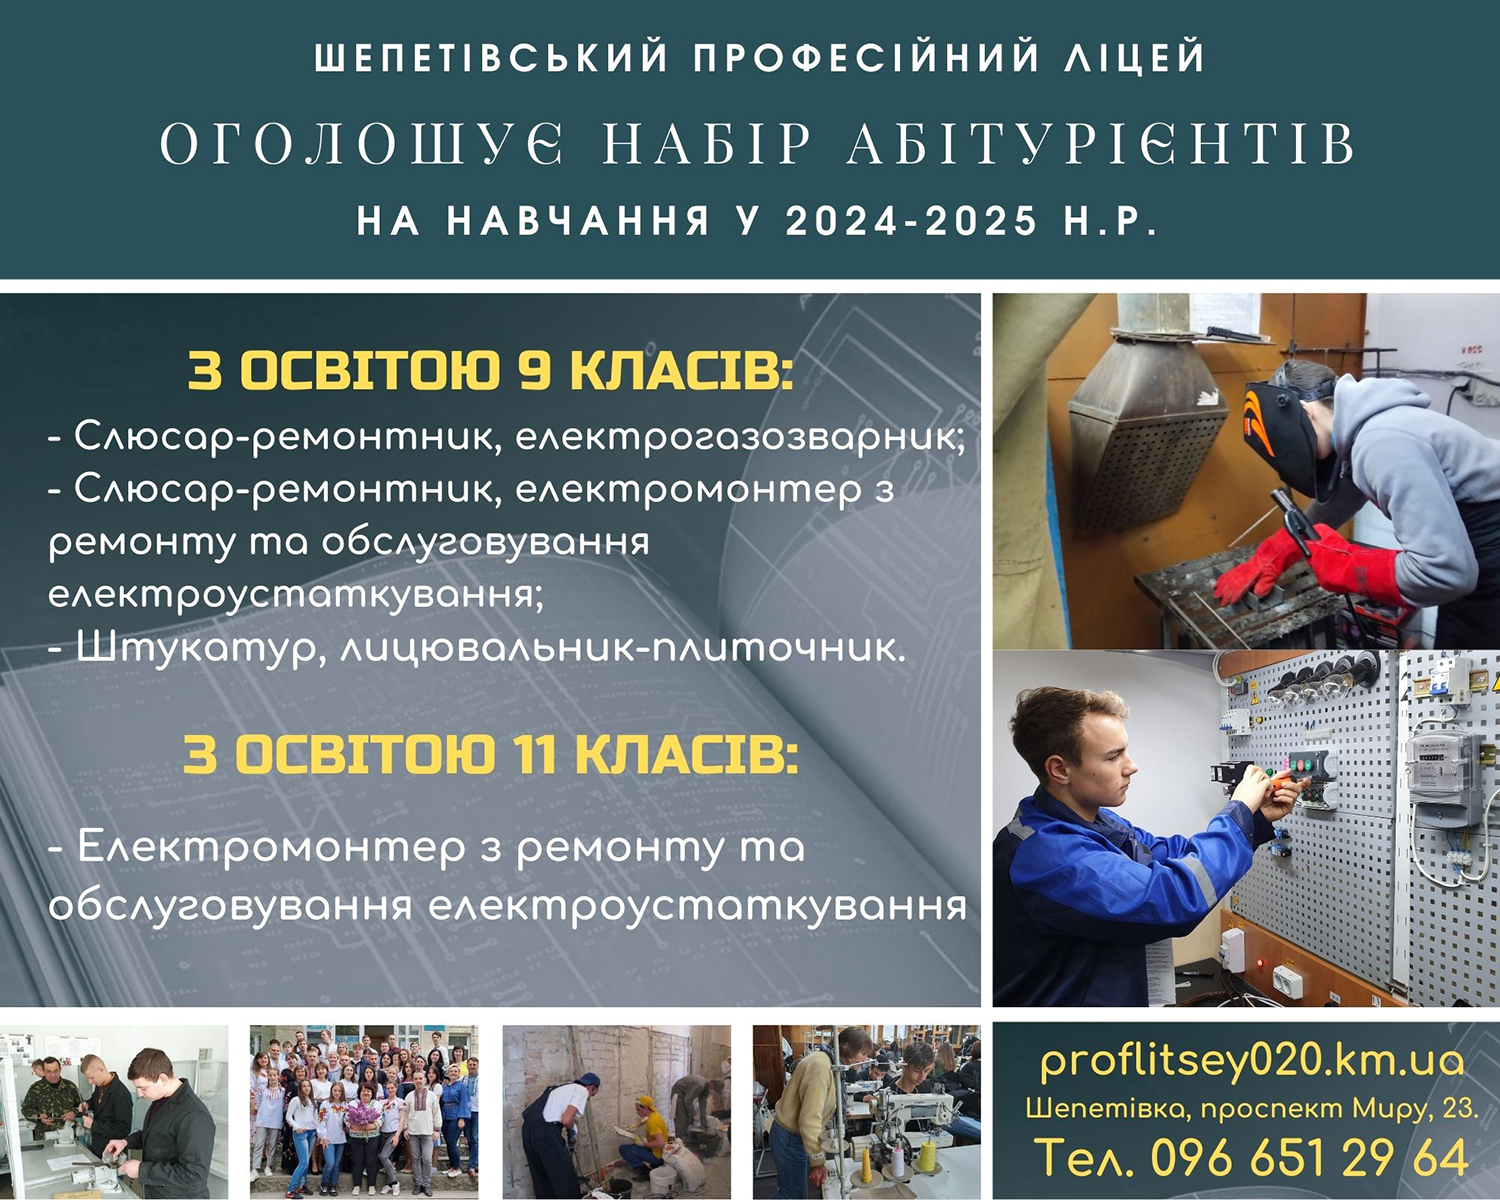 Шепетівський професійний ліцей у 2024 році запрошує на навчання